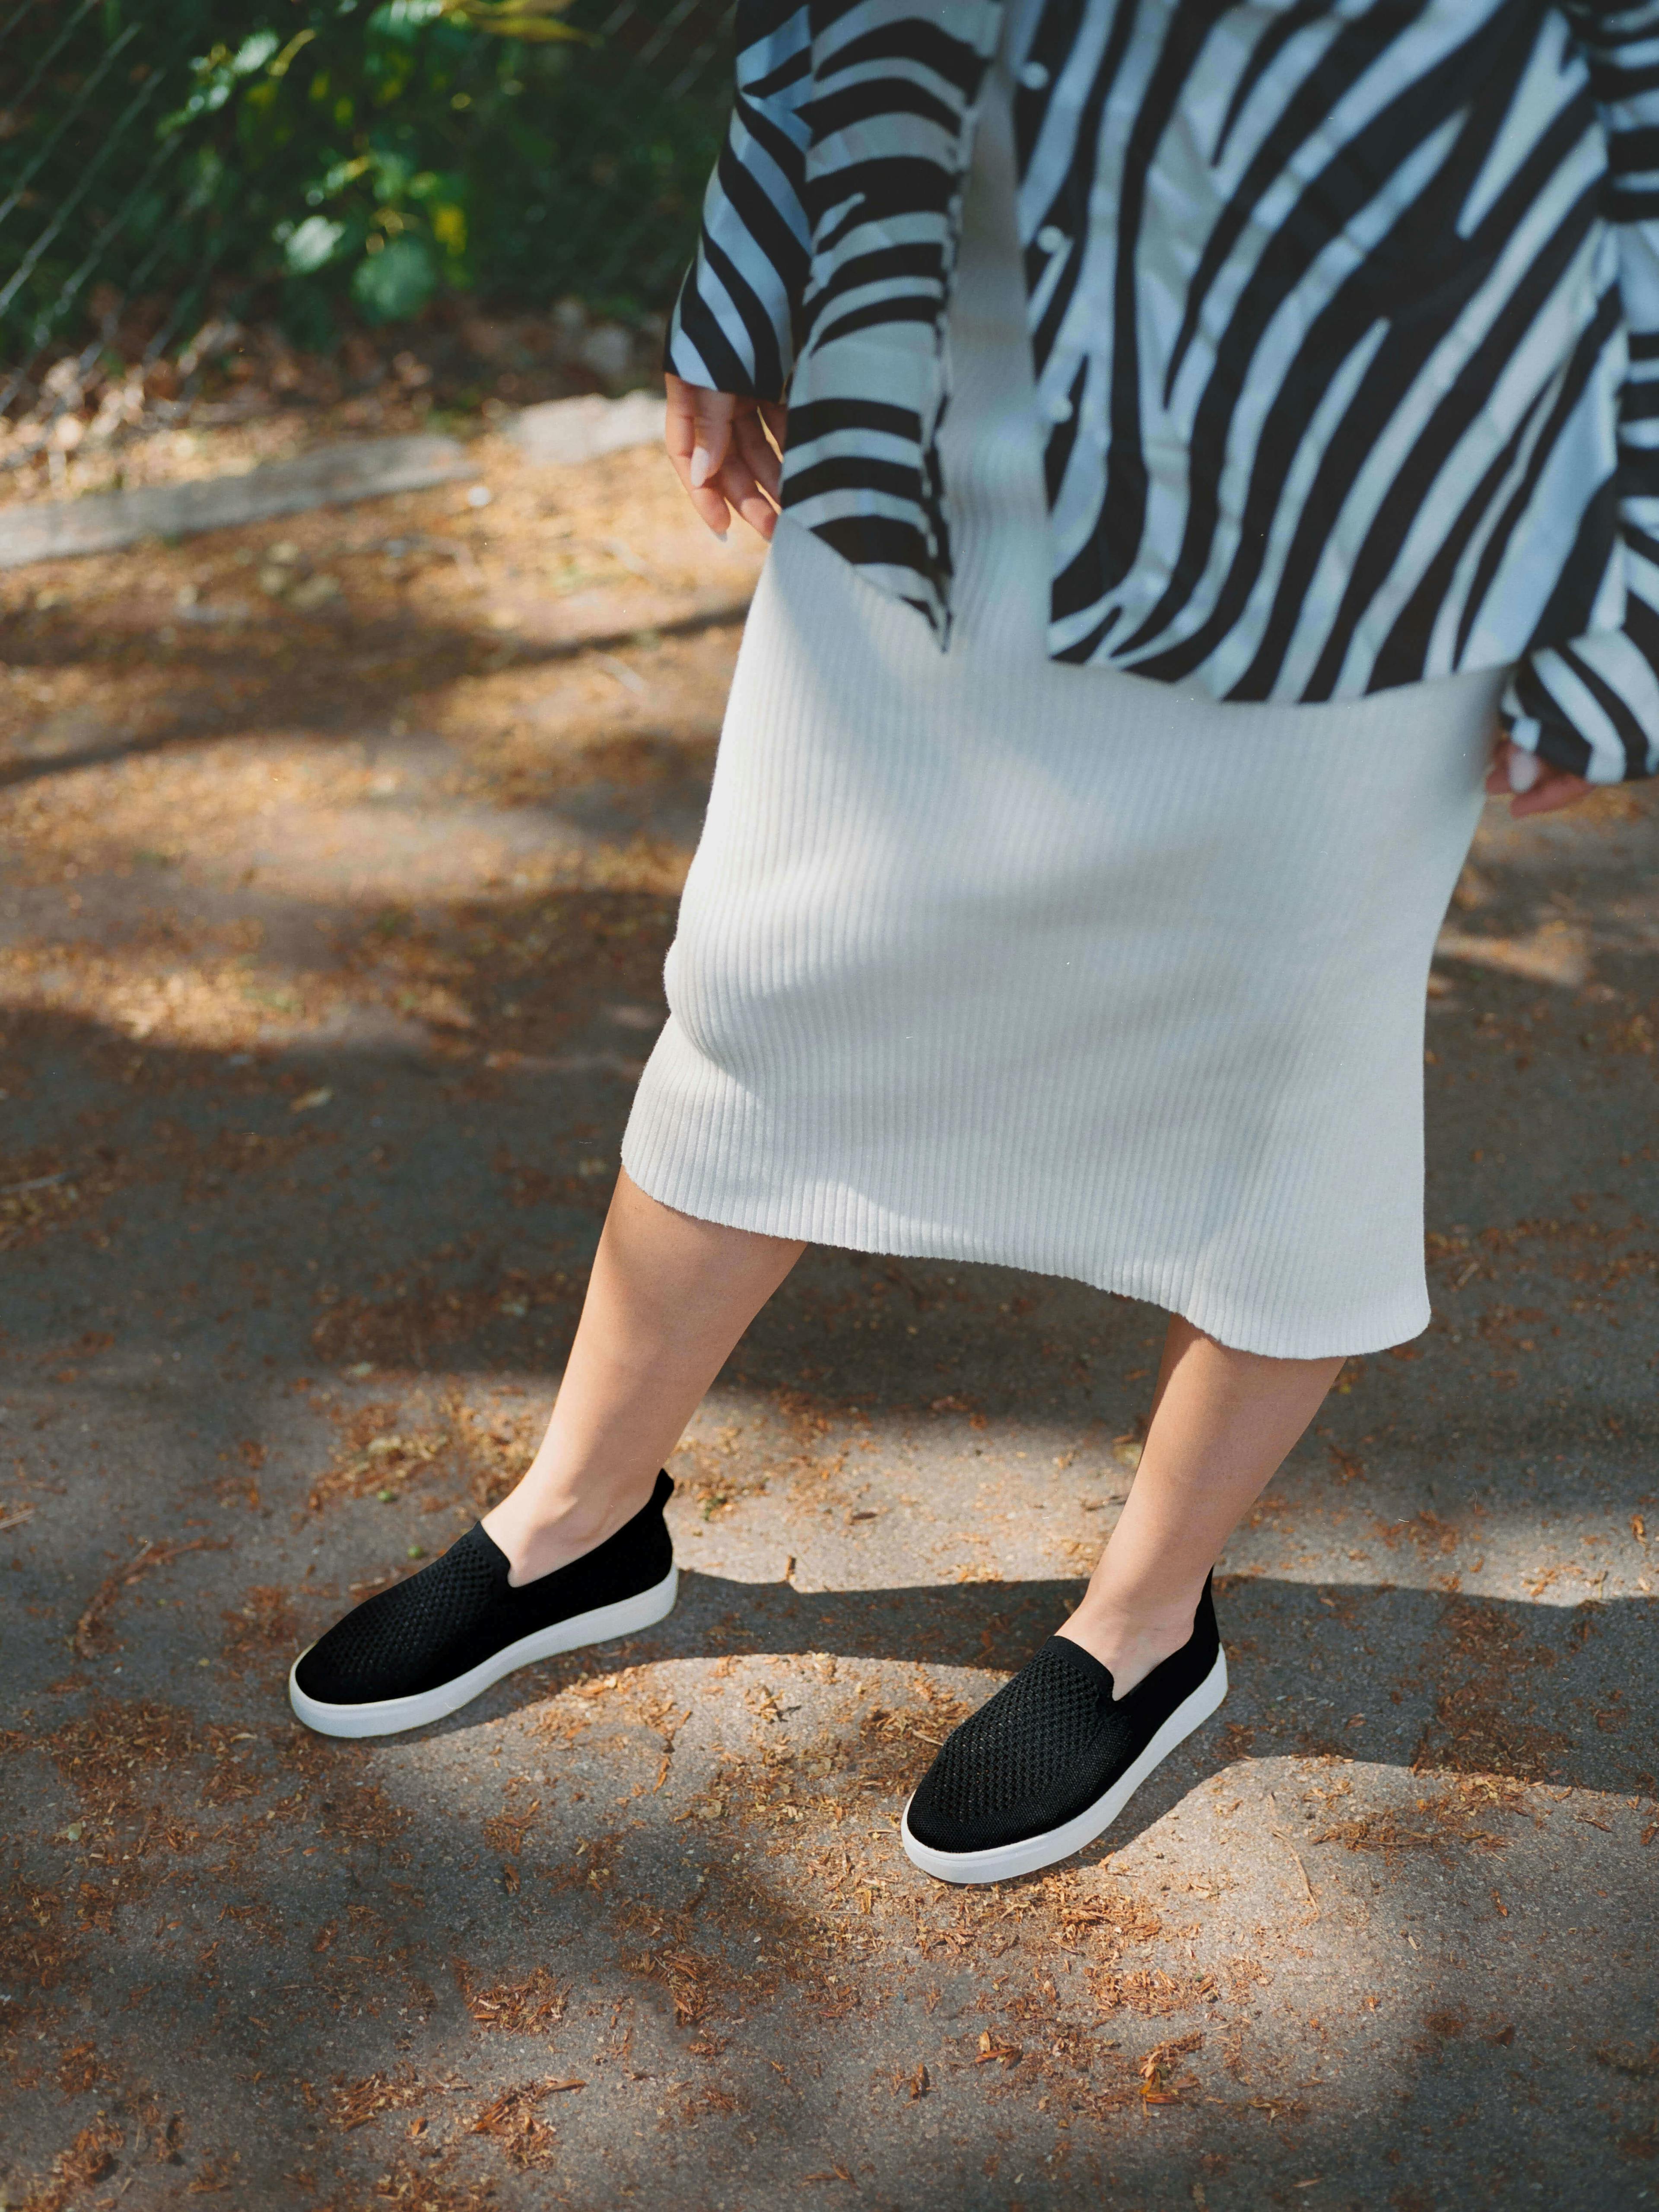 Stup inn i sommeren med Stavern pustende slip-on sneakers, designet for kjølig komfort og enkel vedlikehold med deres maskinvaskbare design.